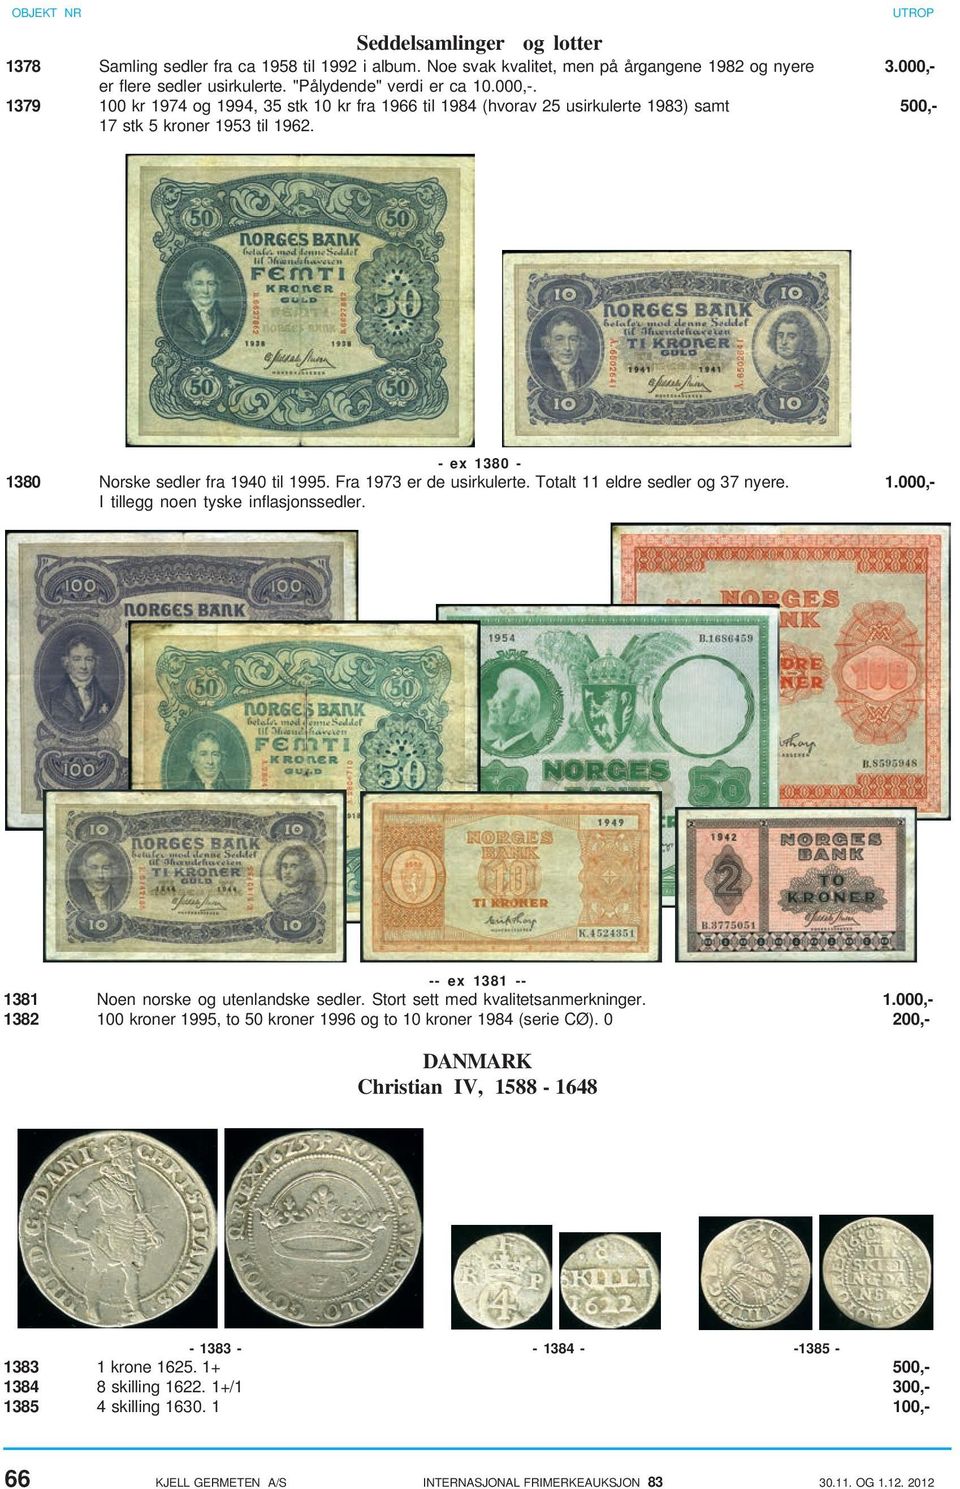 - ex 1380-1380 Norske sedler fra 1940 til 1995. Fra 1973 er de usirkulerte. Totalt 11 eldre sedler og 37 nyere. 1.000,- I tillegg noen tyske inflasjonssedler.